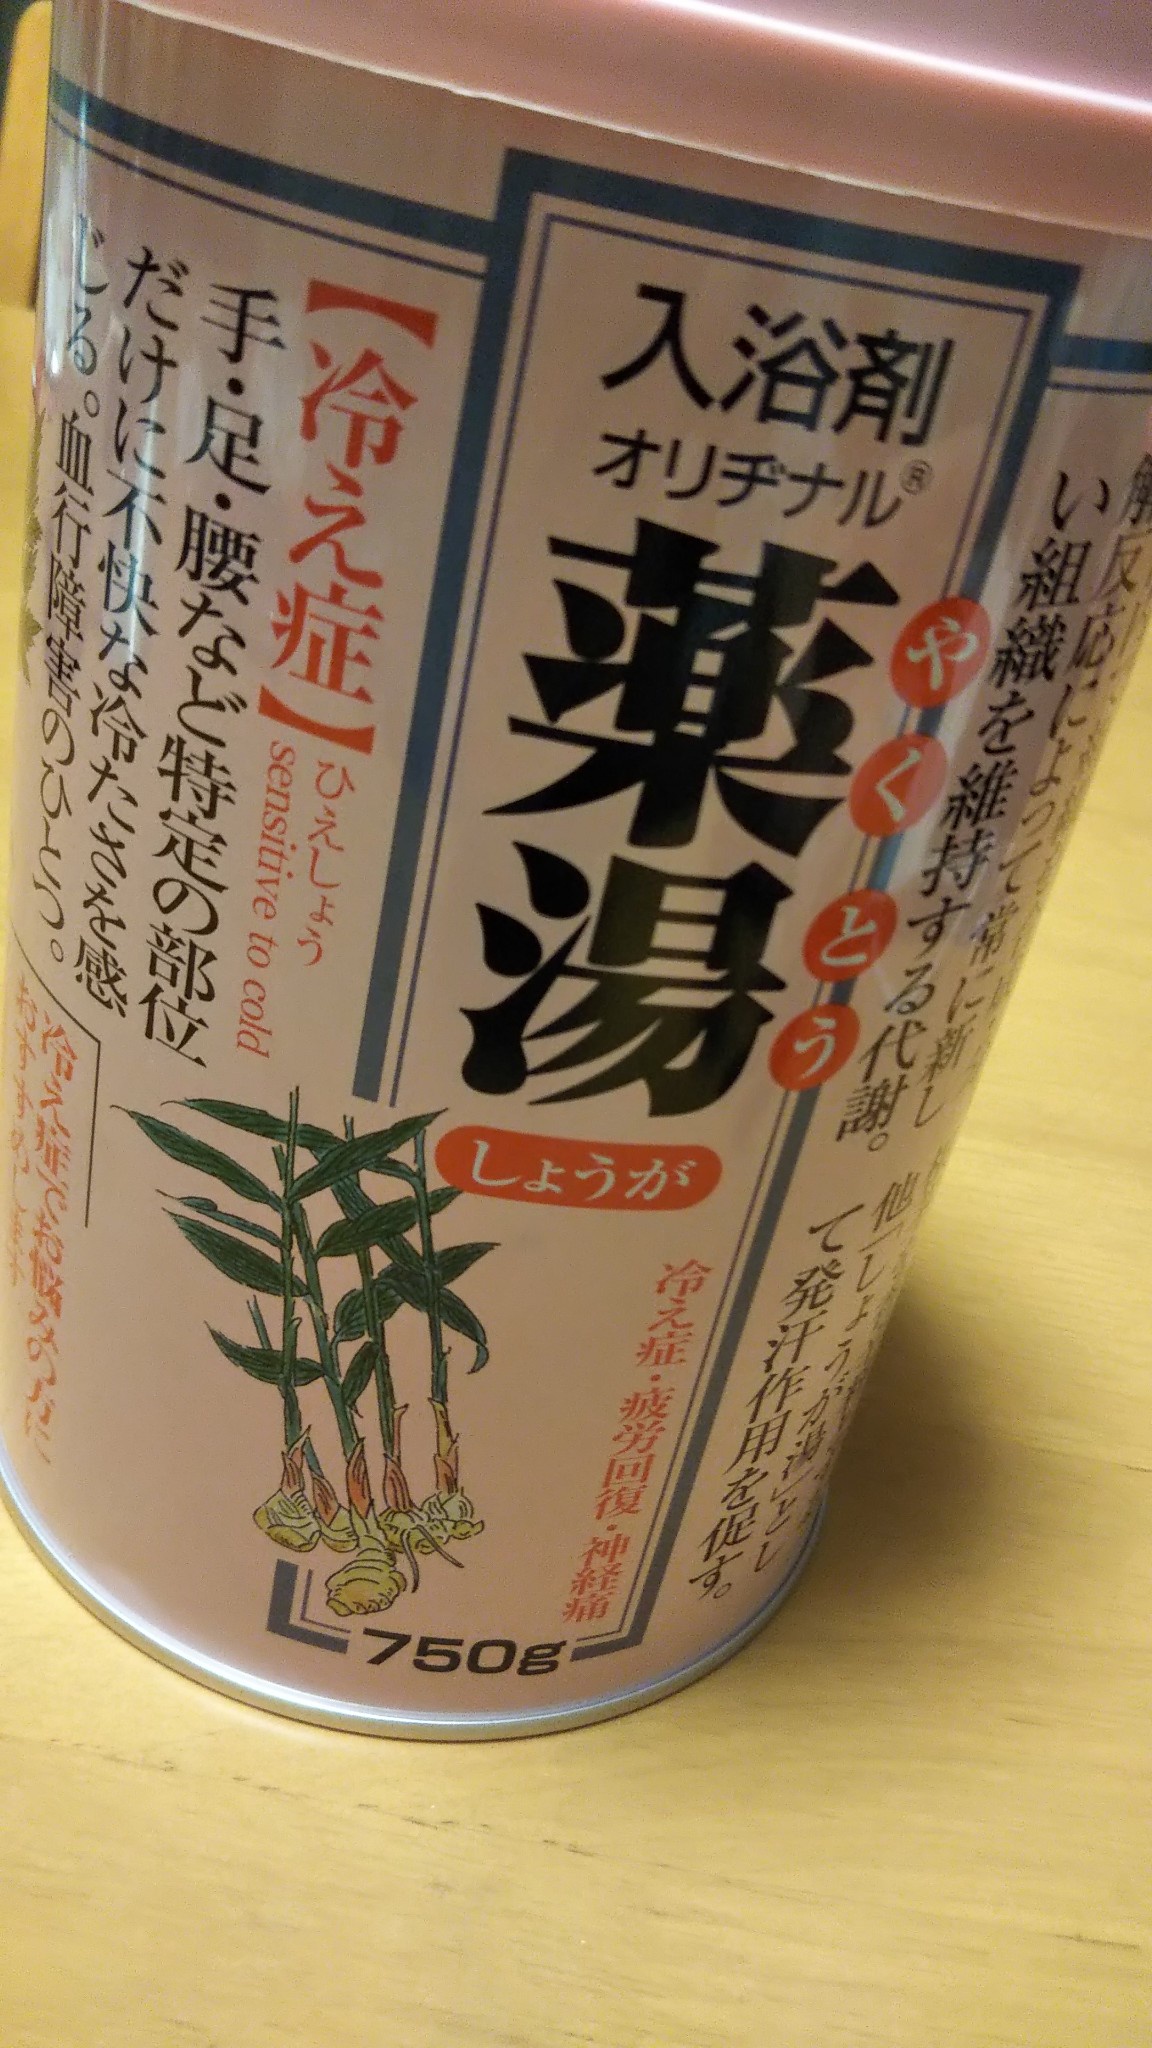 6缶 オリヂナル 薬湯 入浴剤 しょうが 750g しょうが根精油と植物精油